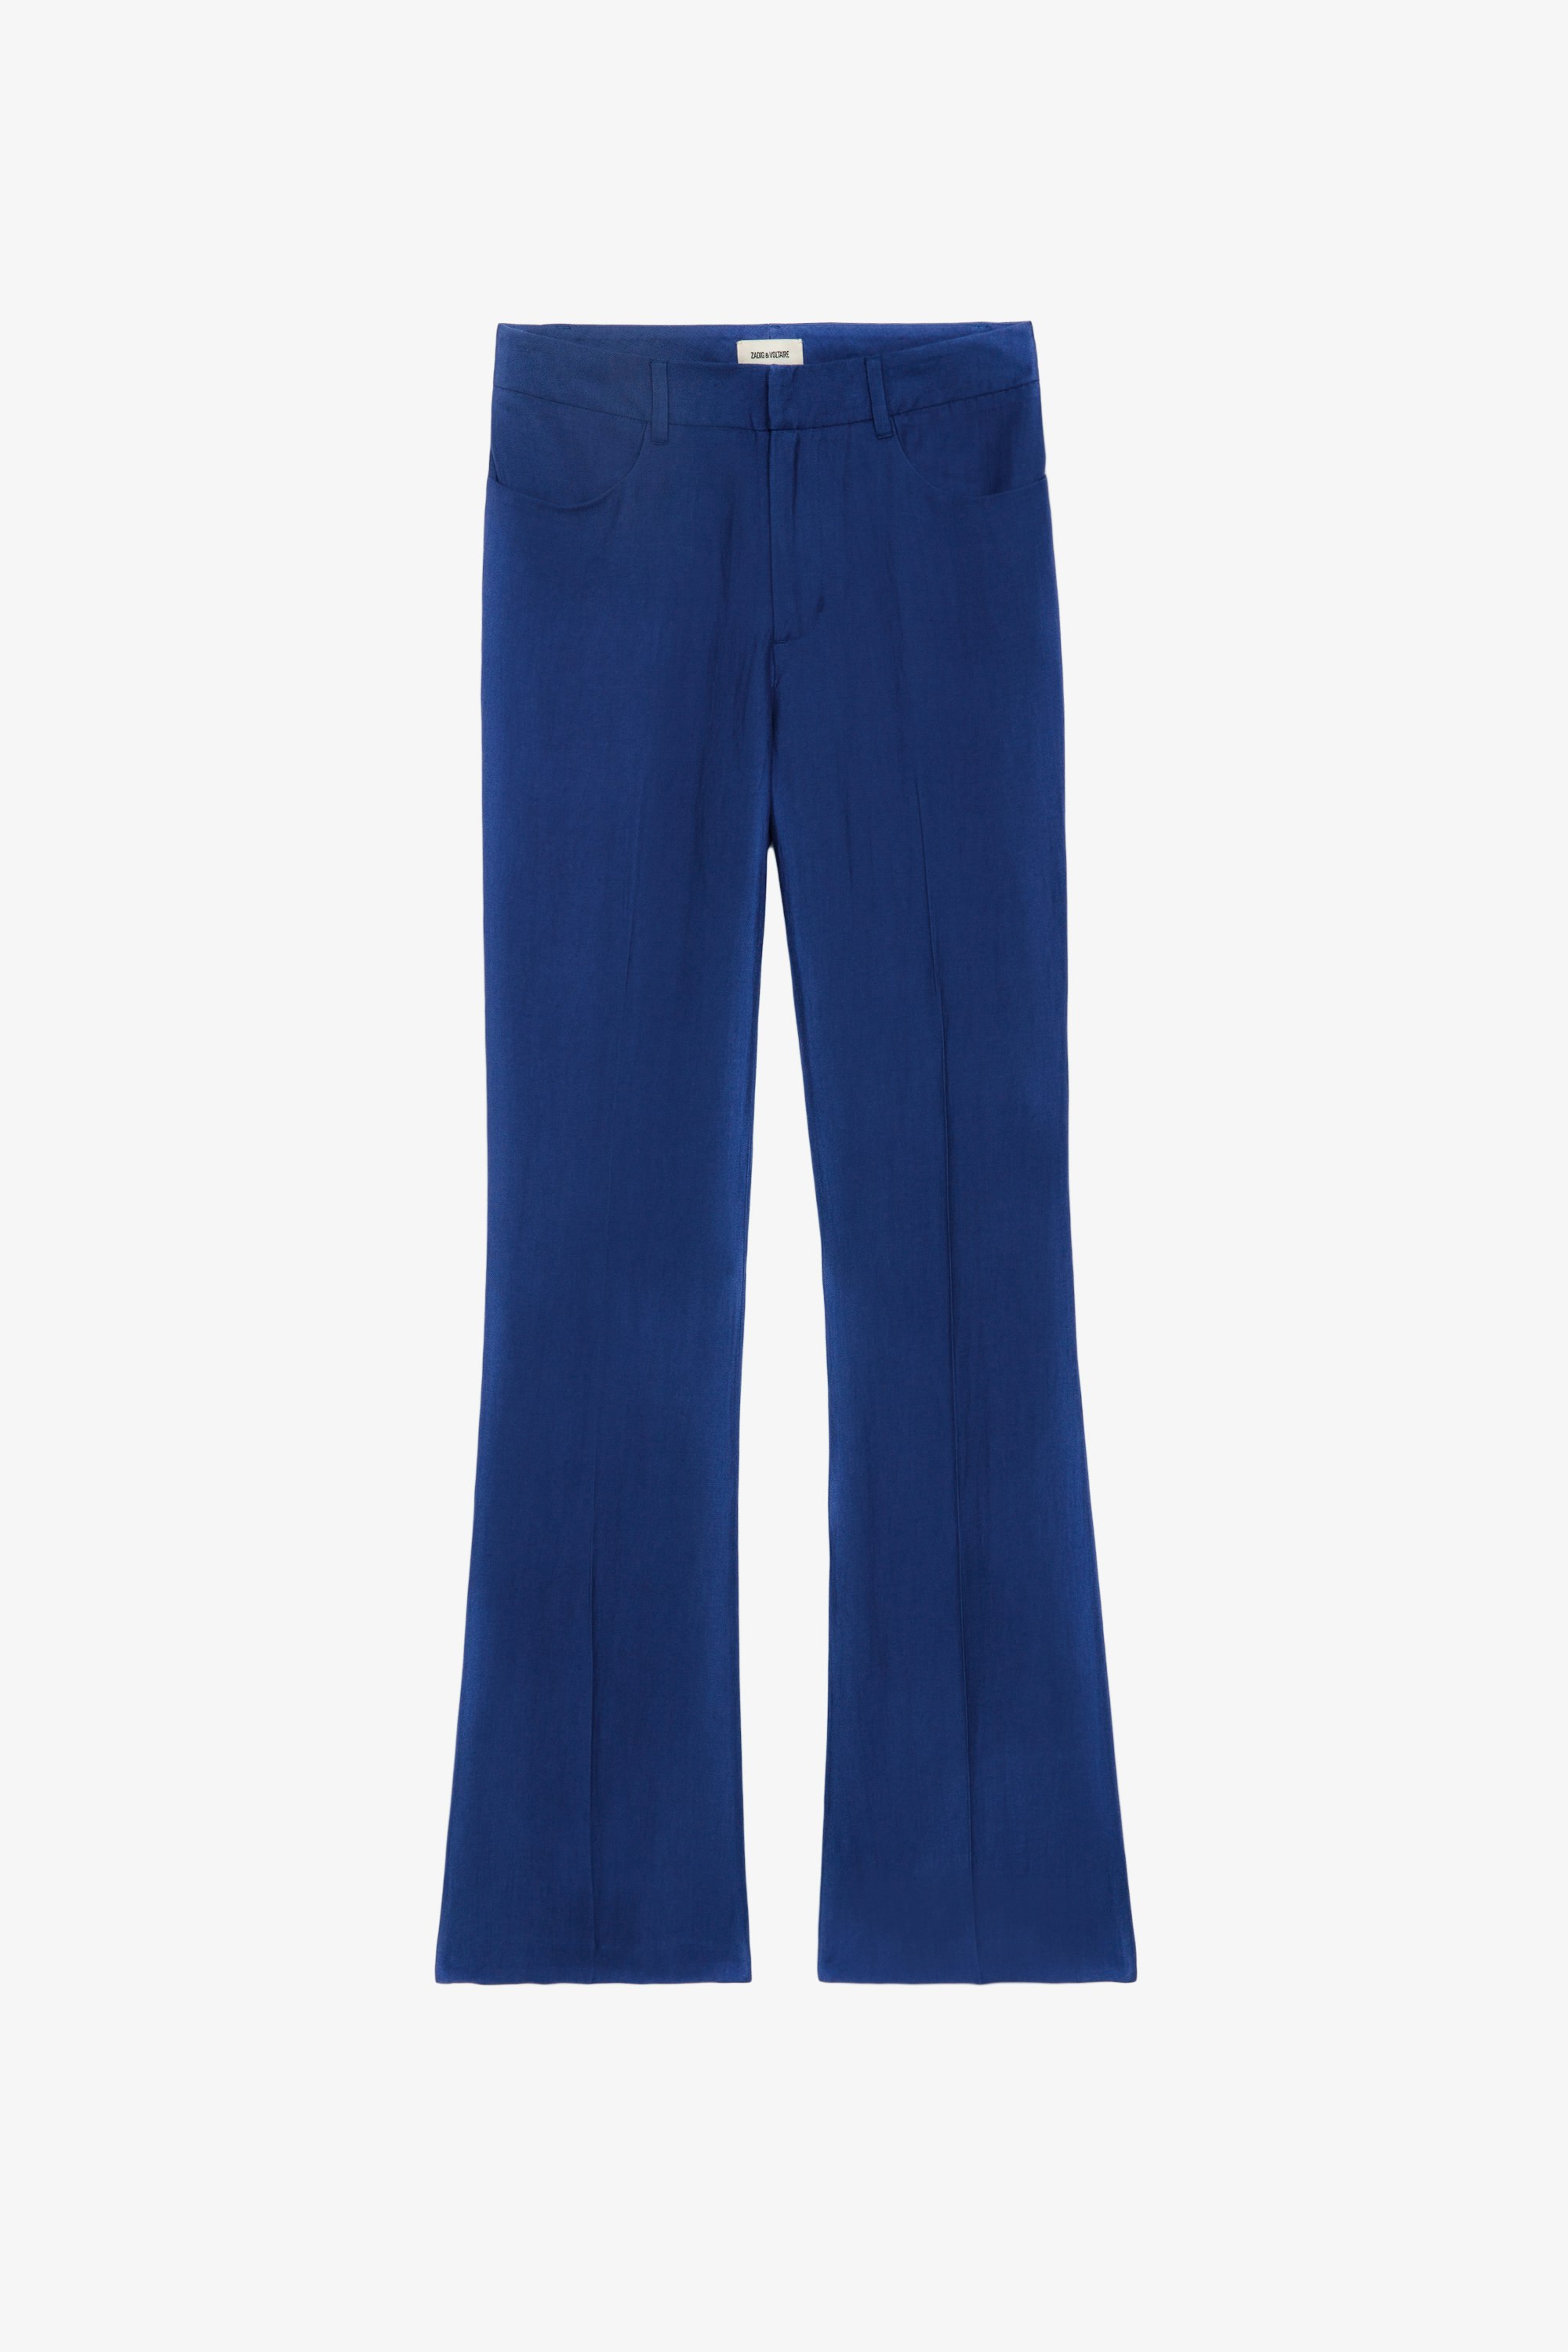 Pantalon Pistol - Pantalon de tailleur évasé en lin bleu à poches et plis.